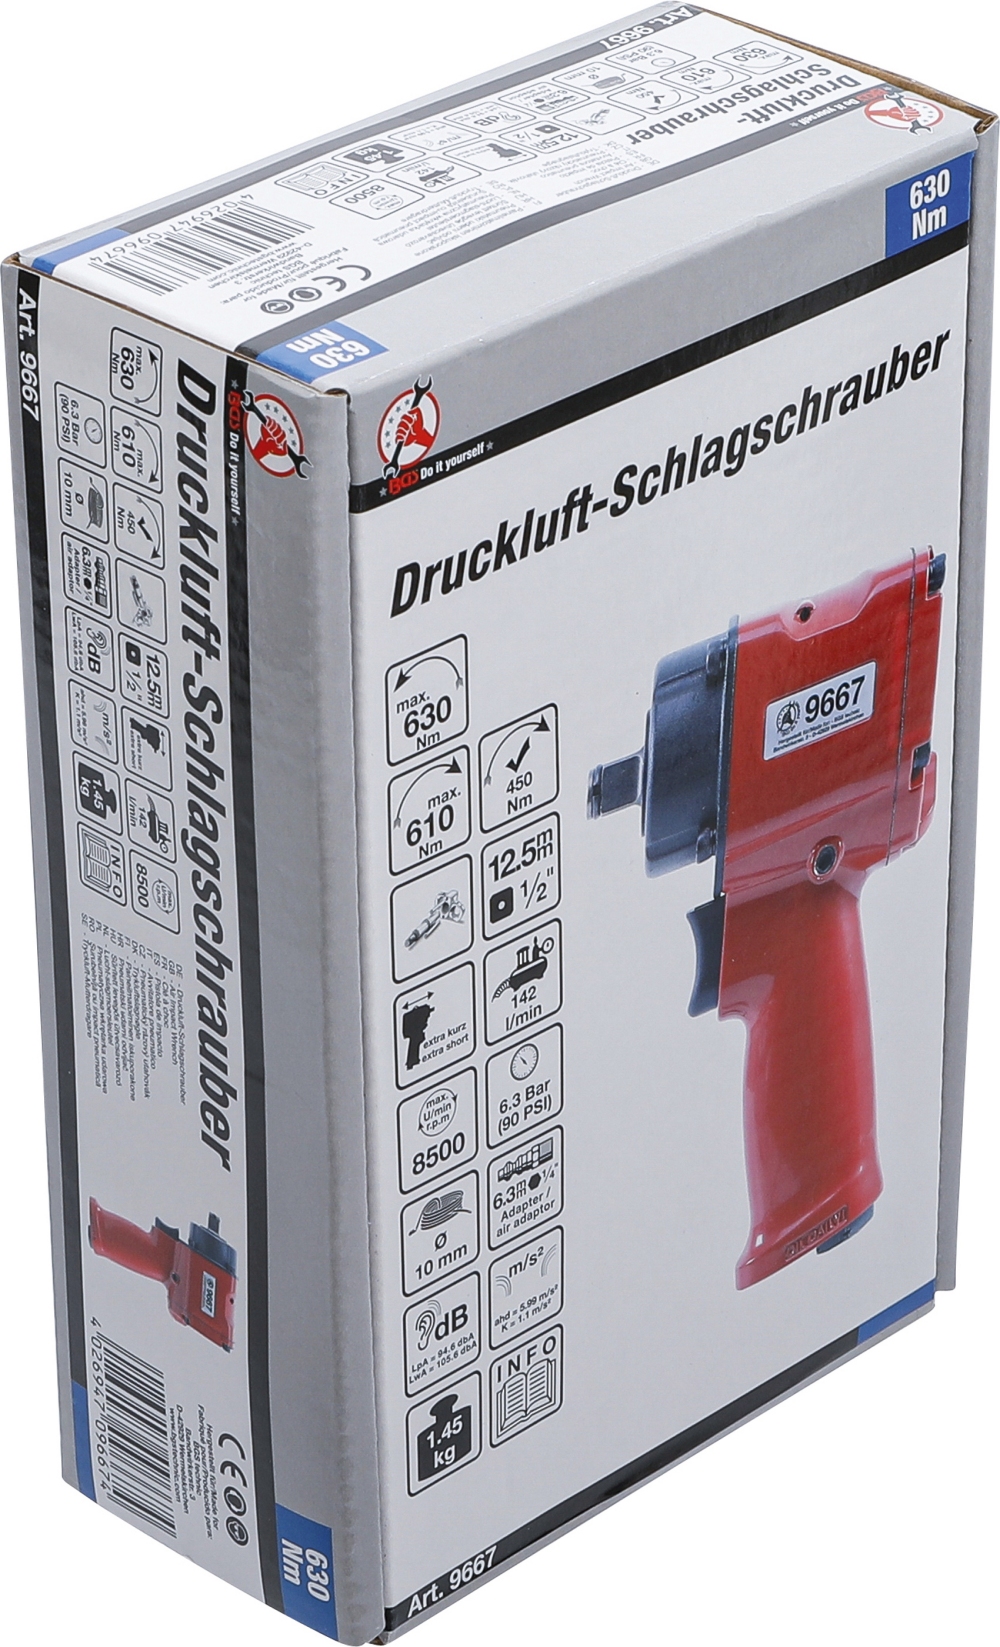 BGS DIY 9667 Druckluft Schlagschrauber 12,5mm (1/2